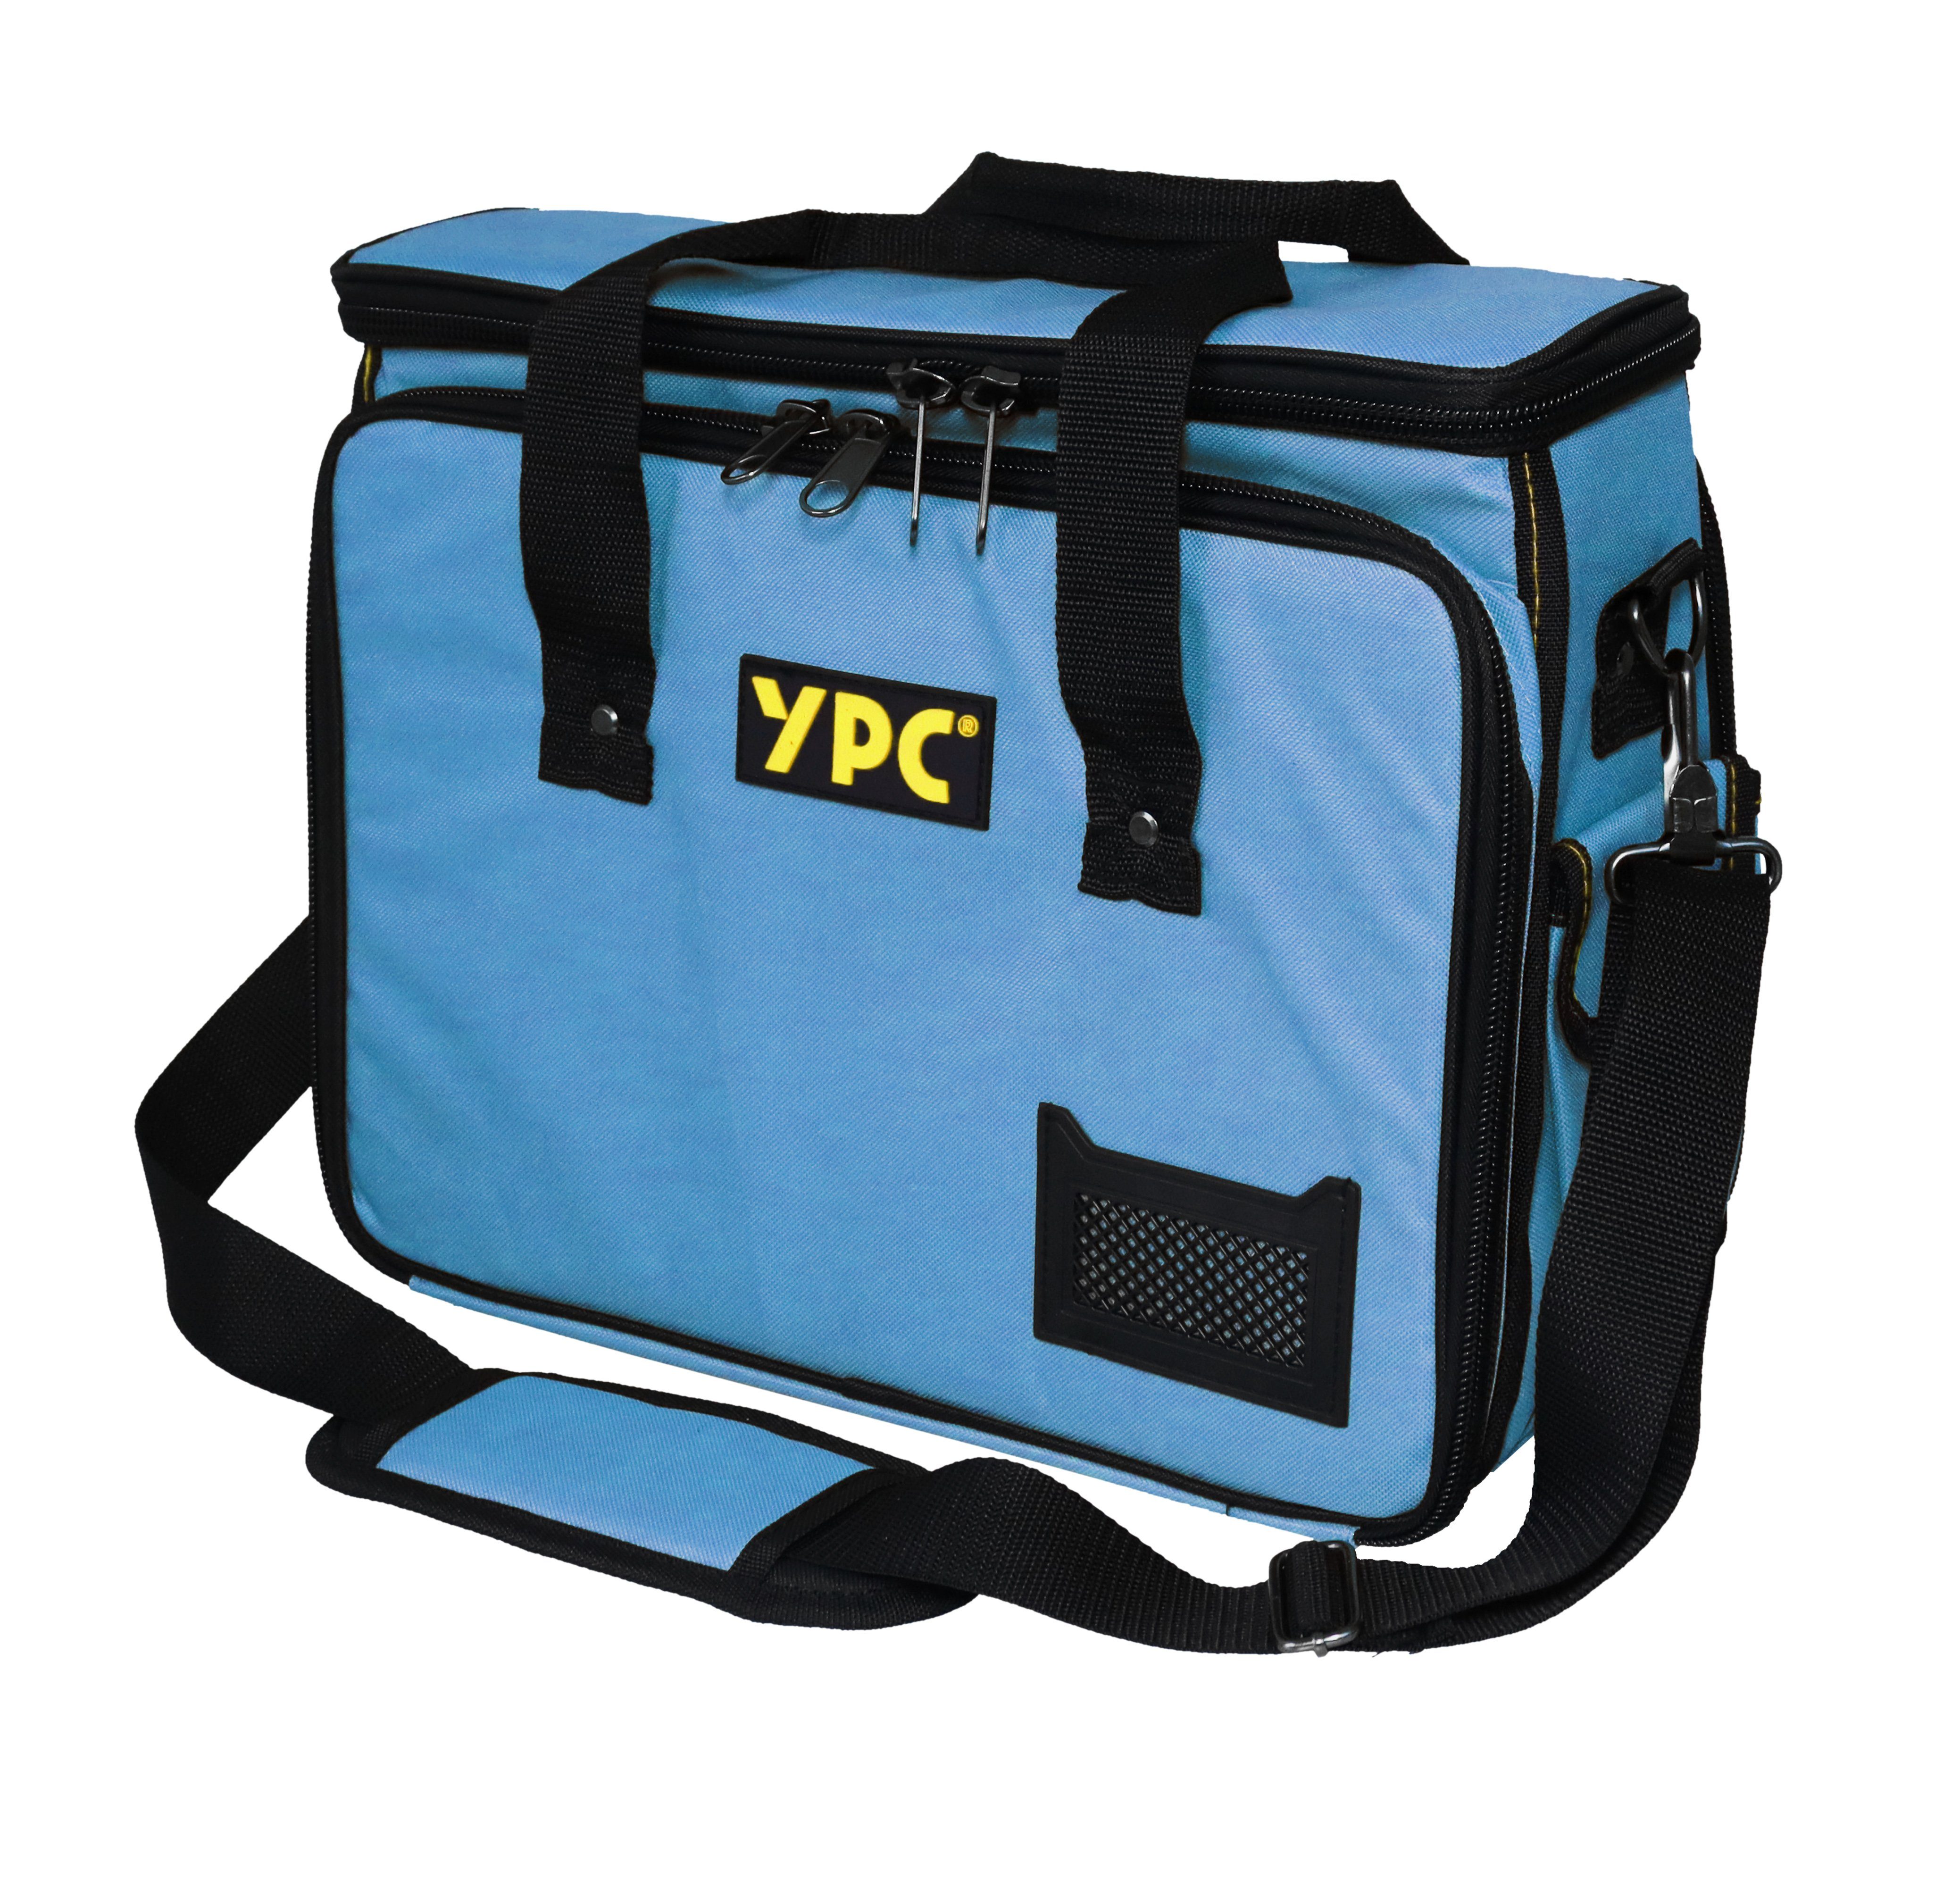 für "Operator" und YPC Blau 40x32x20cm, Tragkraft, Tragetasche Werkzeug Werkzeugtasche 20 mit XL, Umhängetasche, Haltern, Fächern kg Werkzeugtasche Einschüben